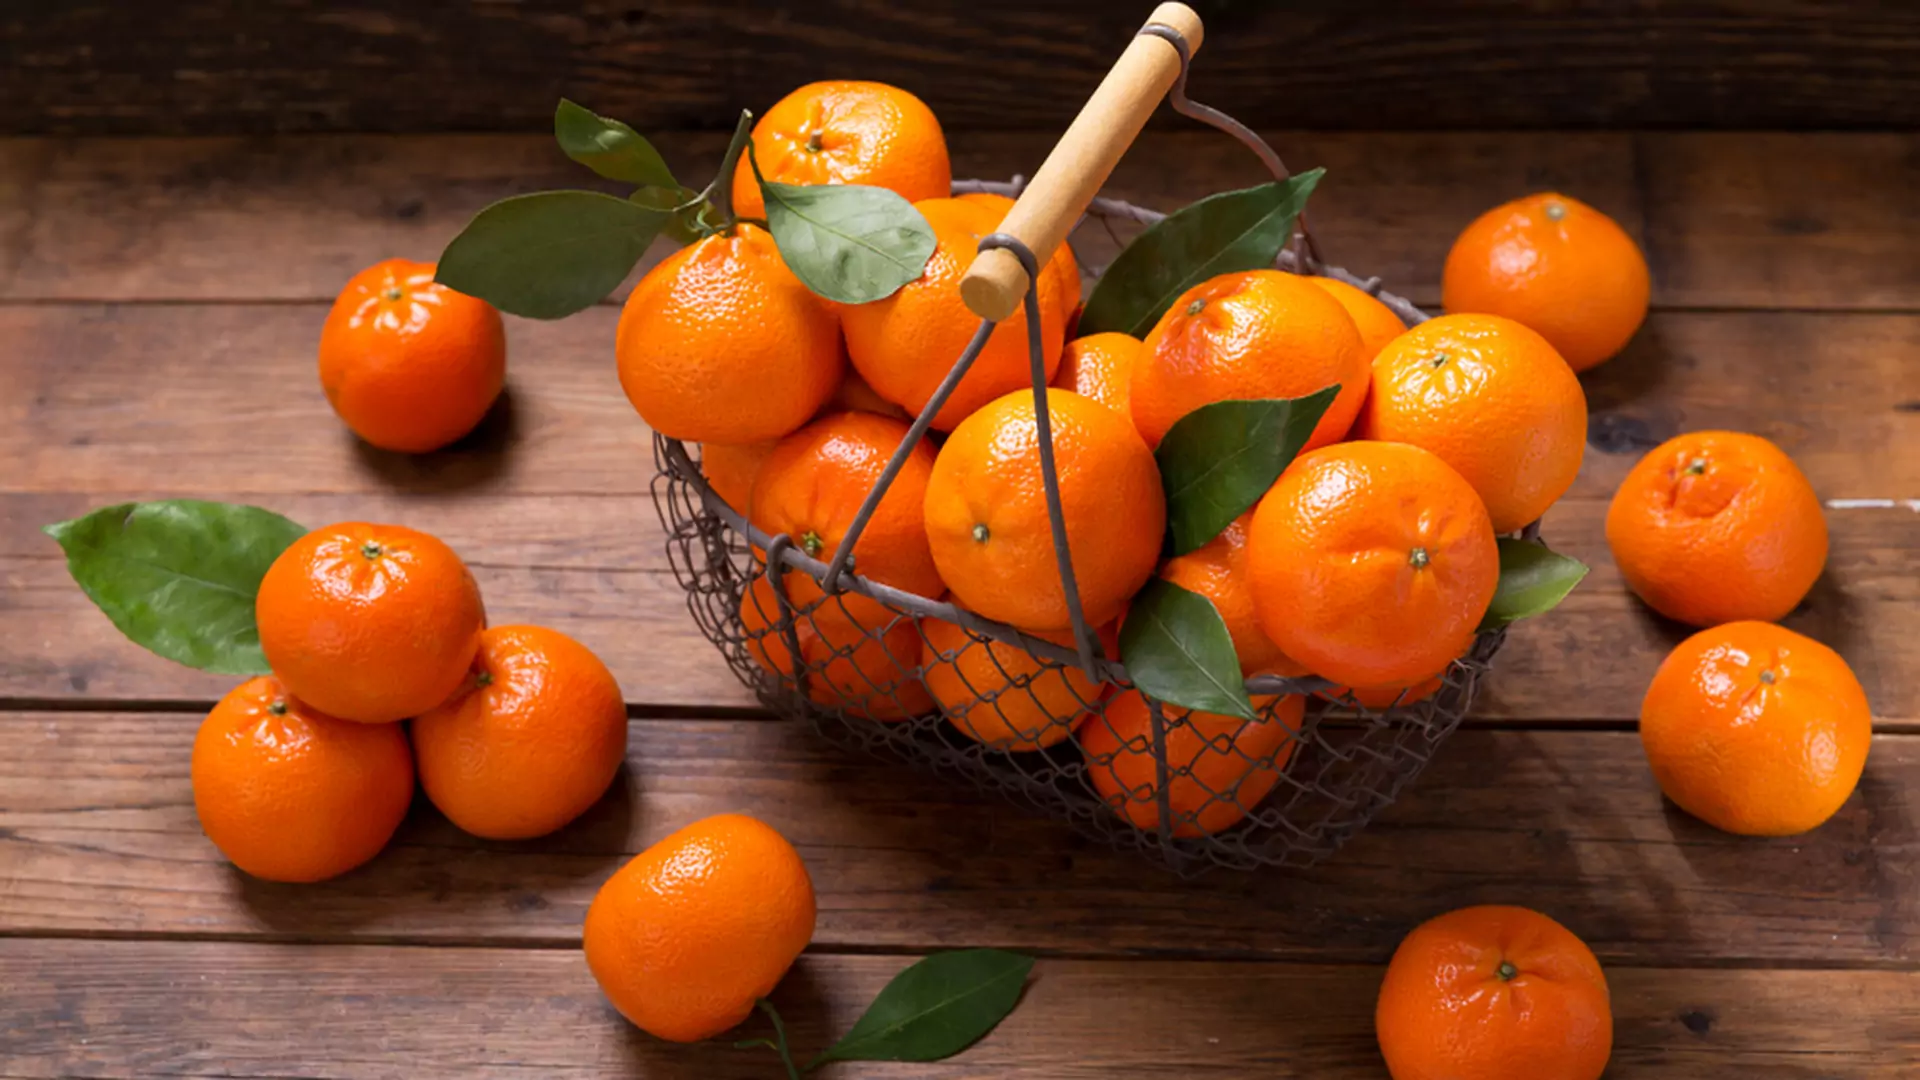 Klementynka czy mandarynka? Sprawdź, jaka jest różnica między tymi owocami